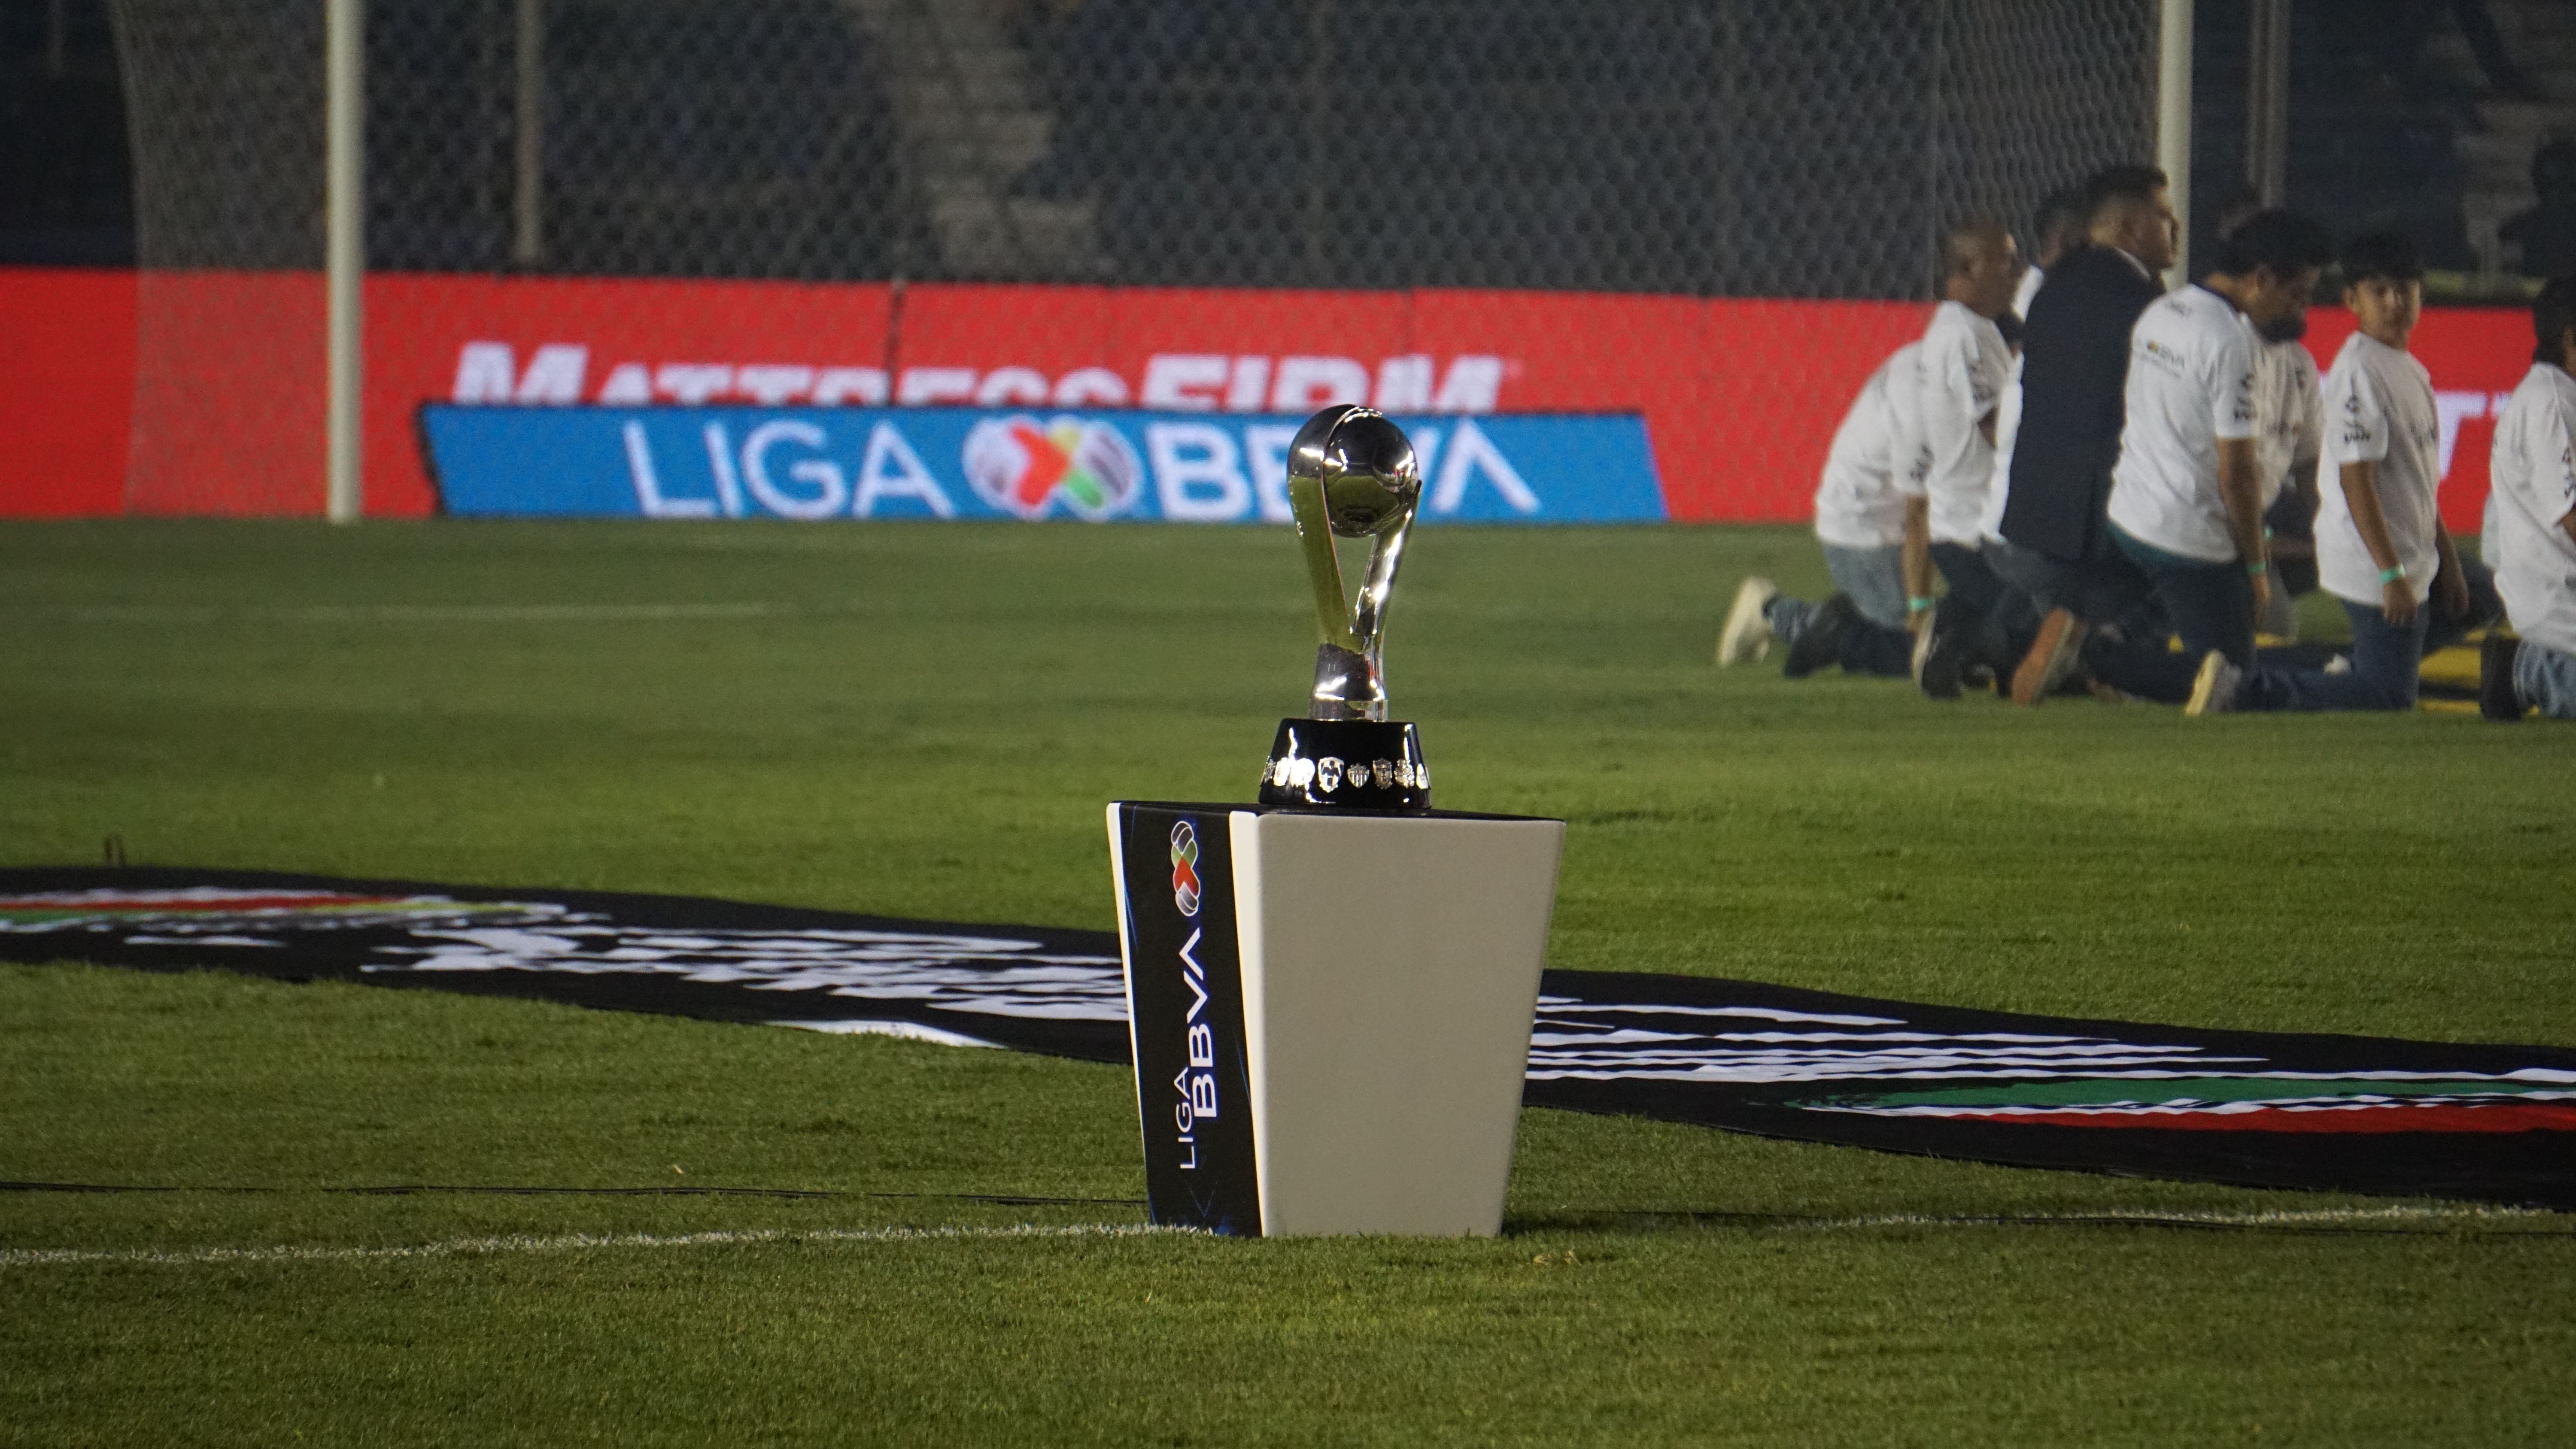 La inteligencia artificial pronostica al próximo campeón de la Liga MX: Club América vs Cruz Azul